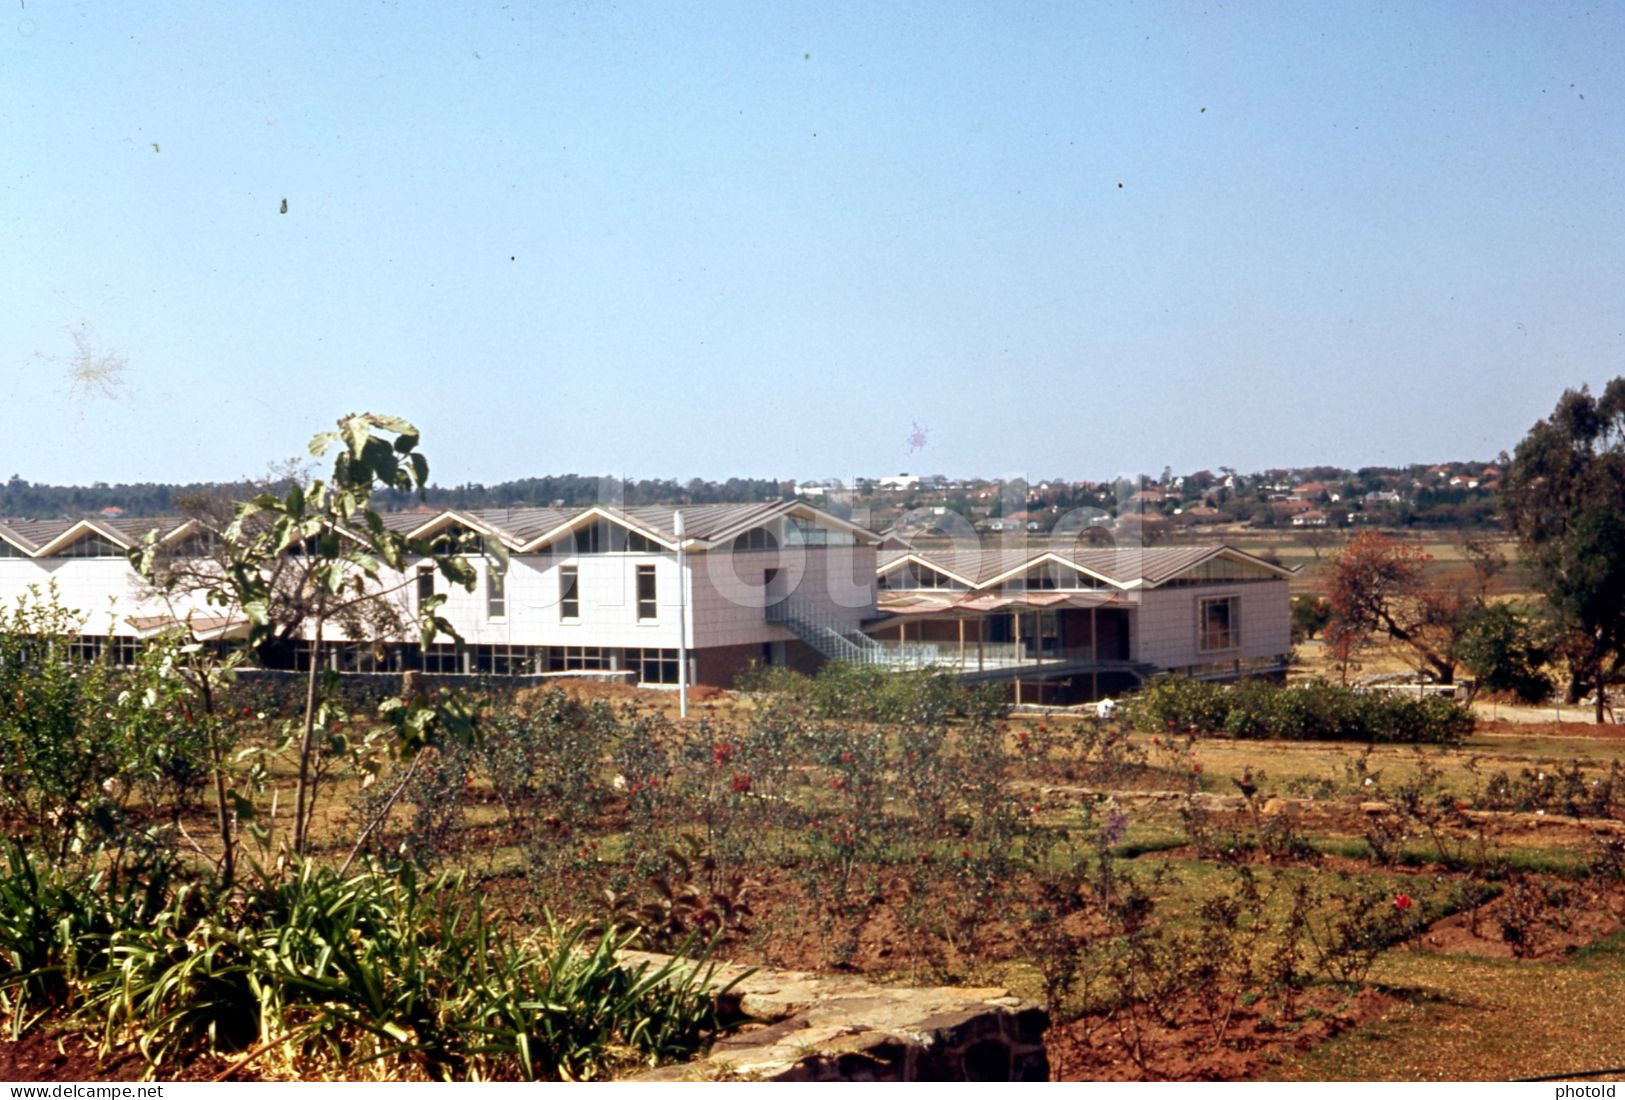 10 SLIDES SET 1964 RODHESIA SALISBURY HARARE ZIMBABWE AFRICA AFRIQUE AMATEUR 35mm SLIDE NOT PHOTO FOTO nb4121